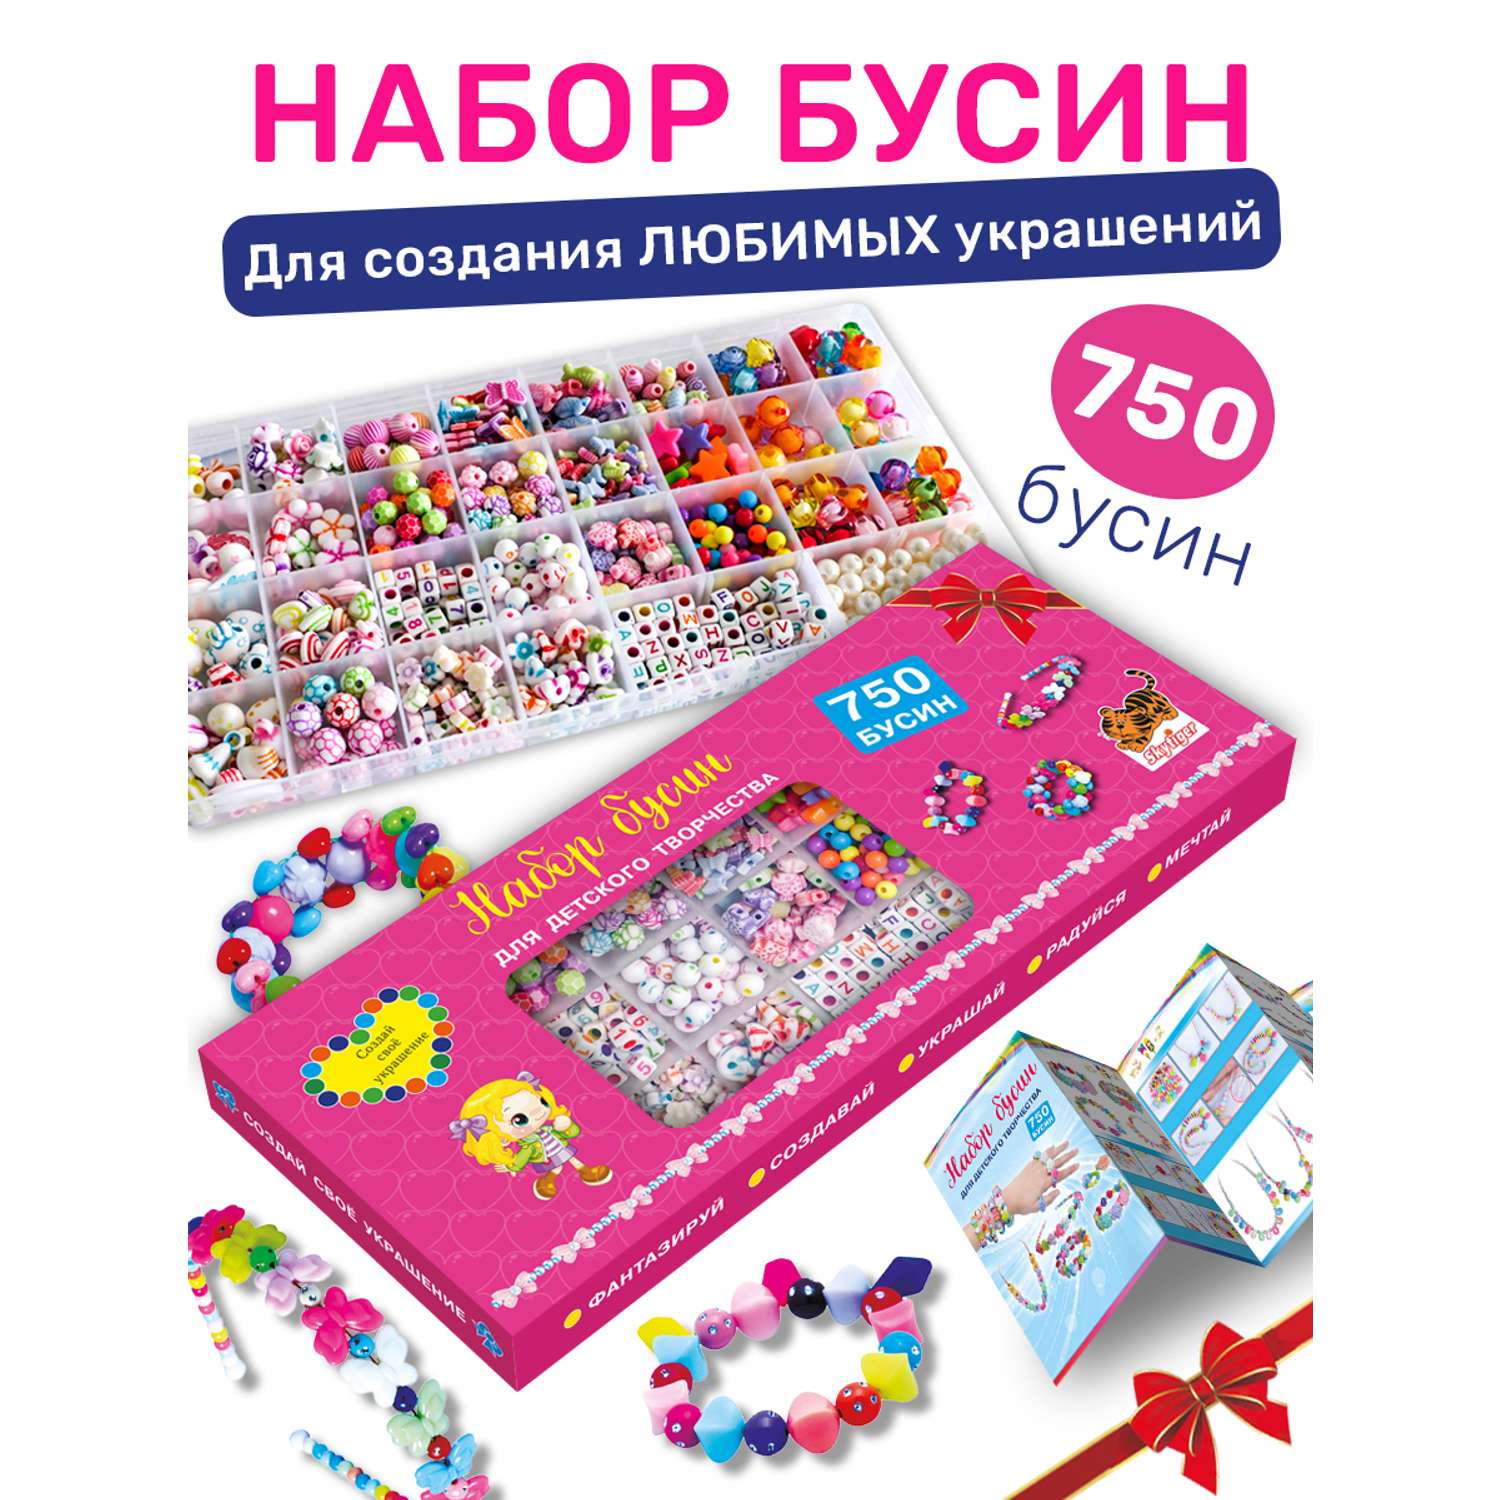 Интернет-магазин товаров для рукоделия webmaster-korolev.ru